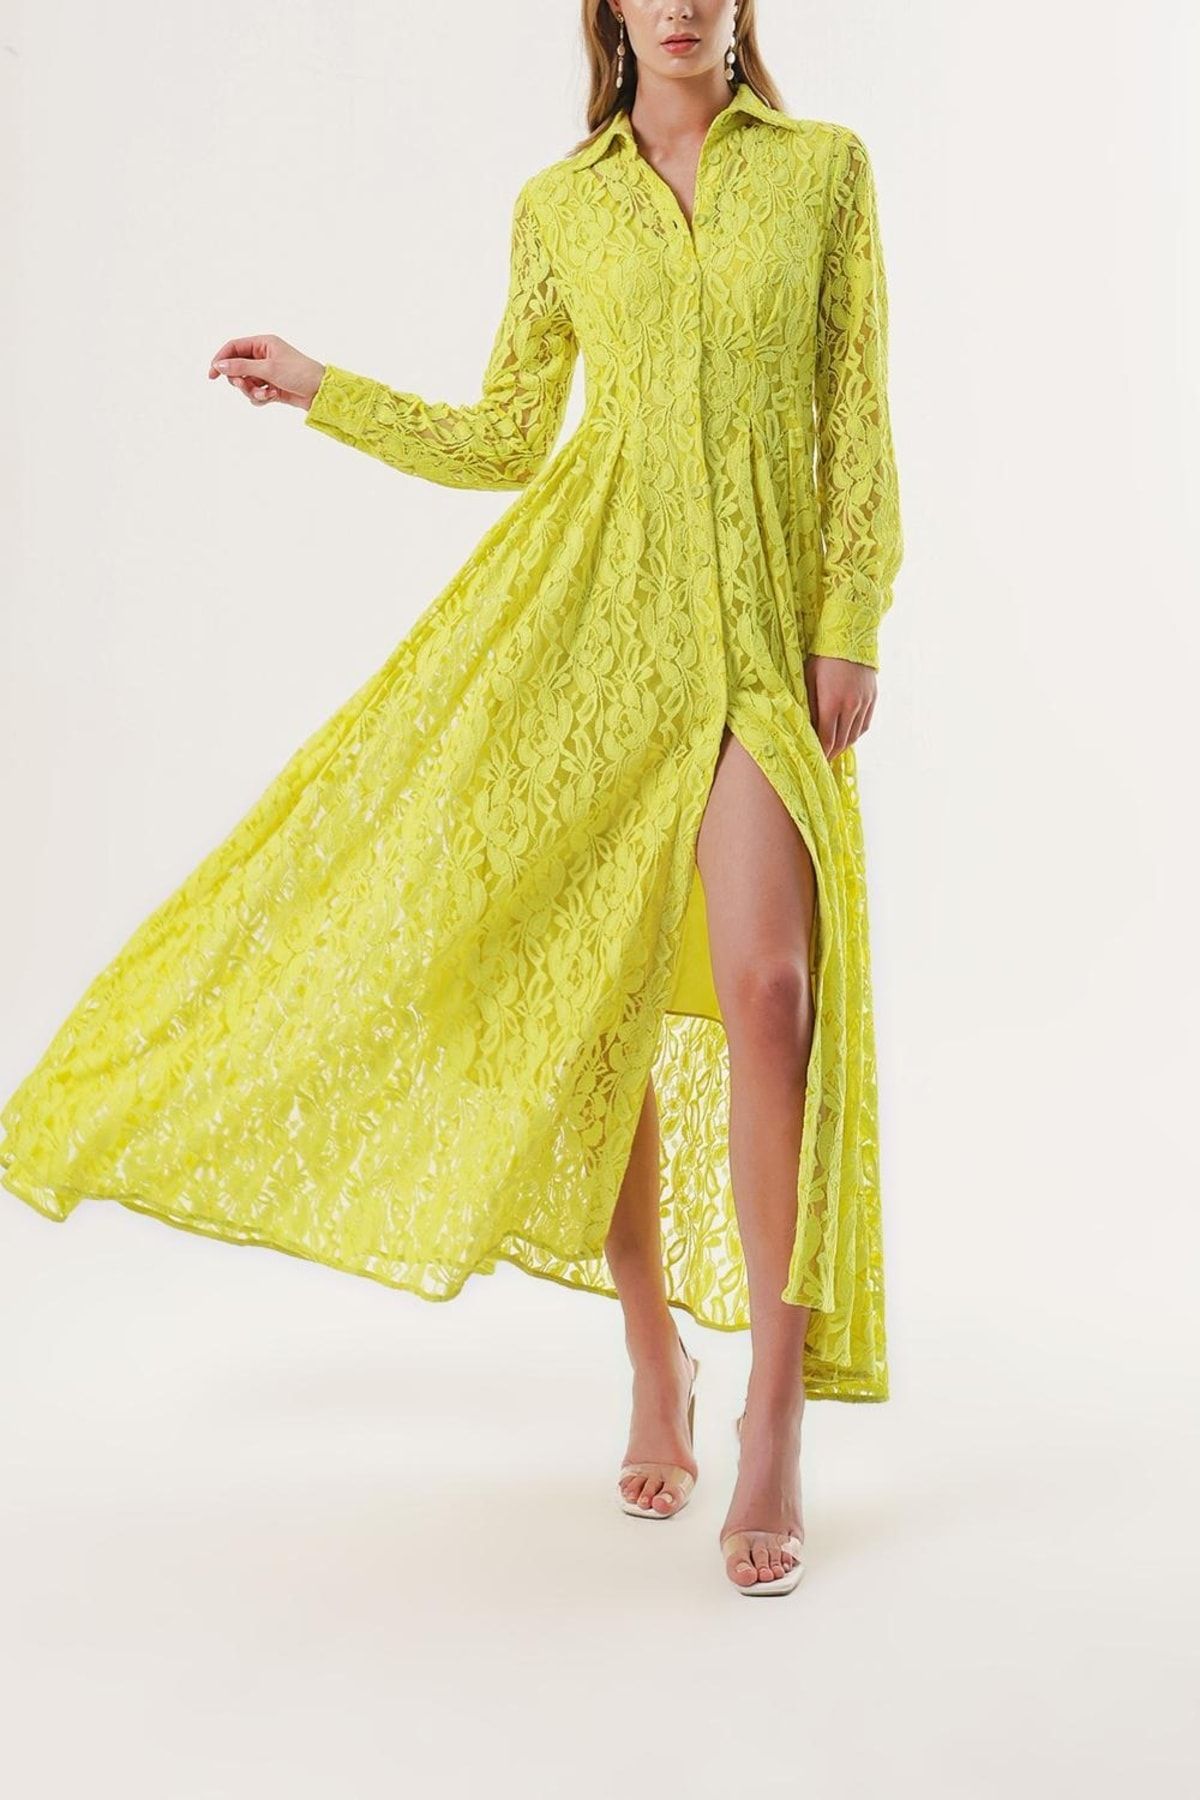 SOCIETA Sarı Dantel Elbise 93958